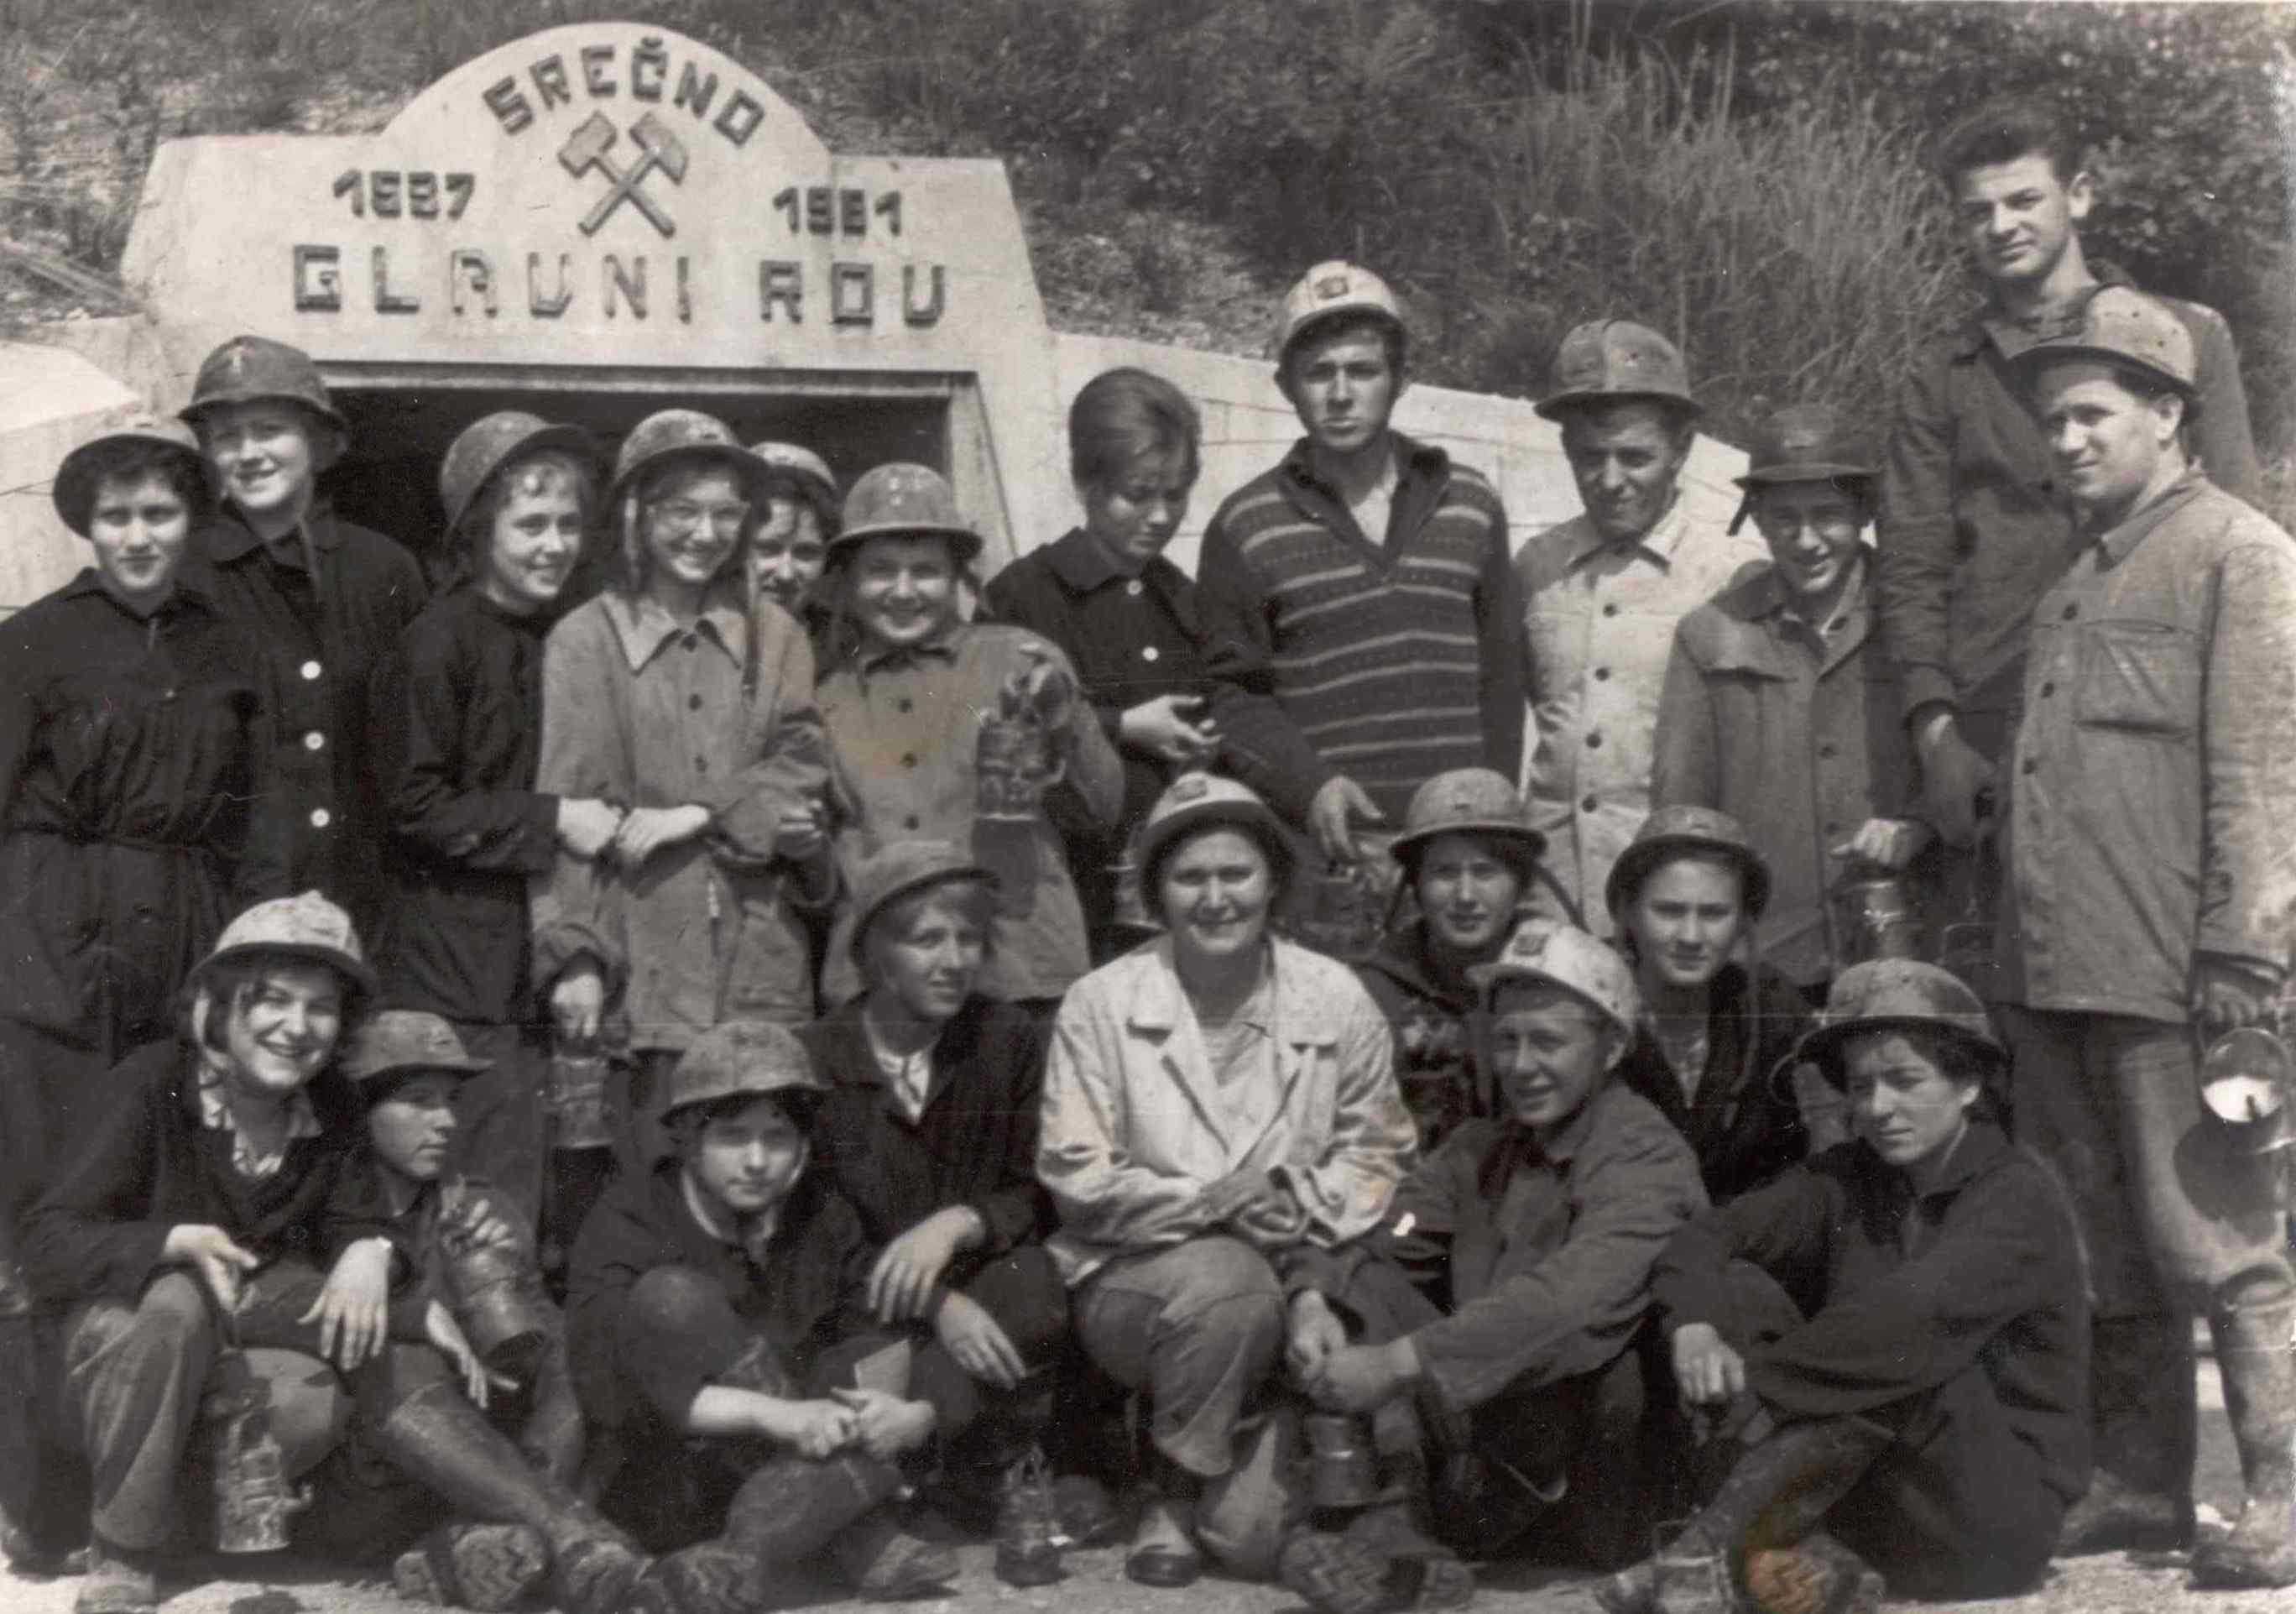 Skupinska slika pred rudnikom sitarjevec - zgodovina rudnika